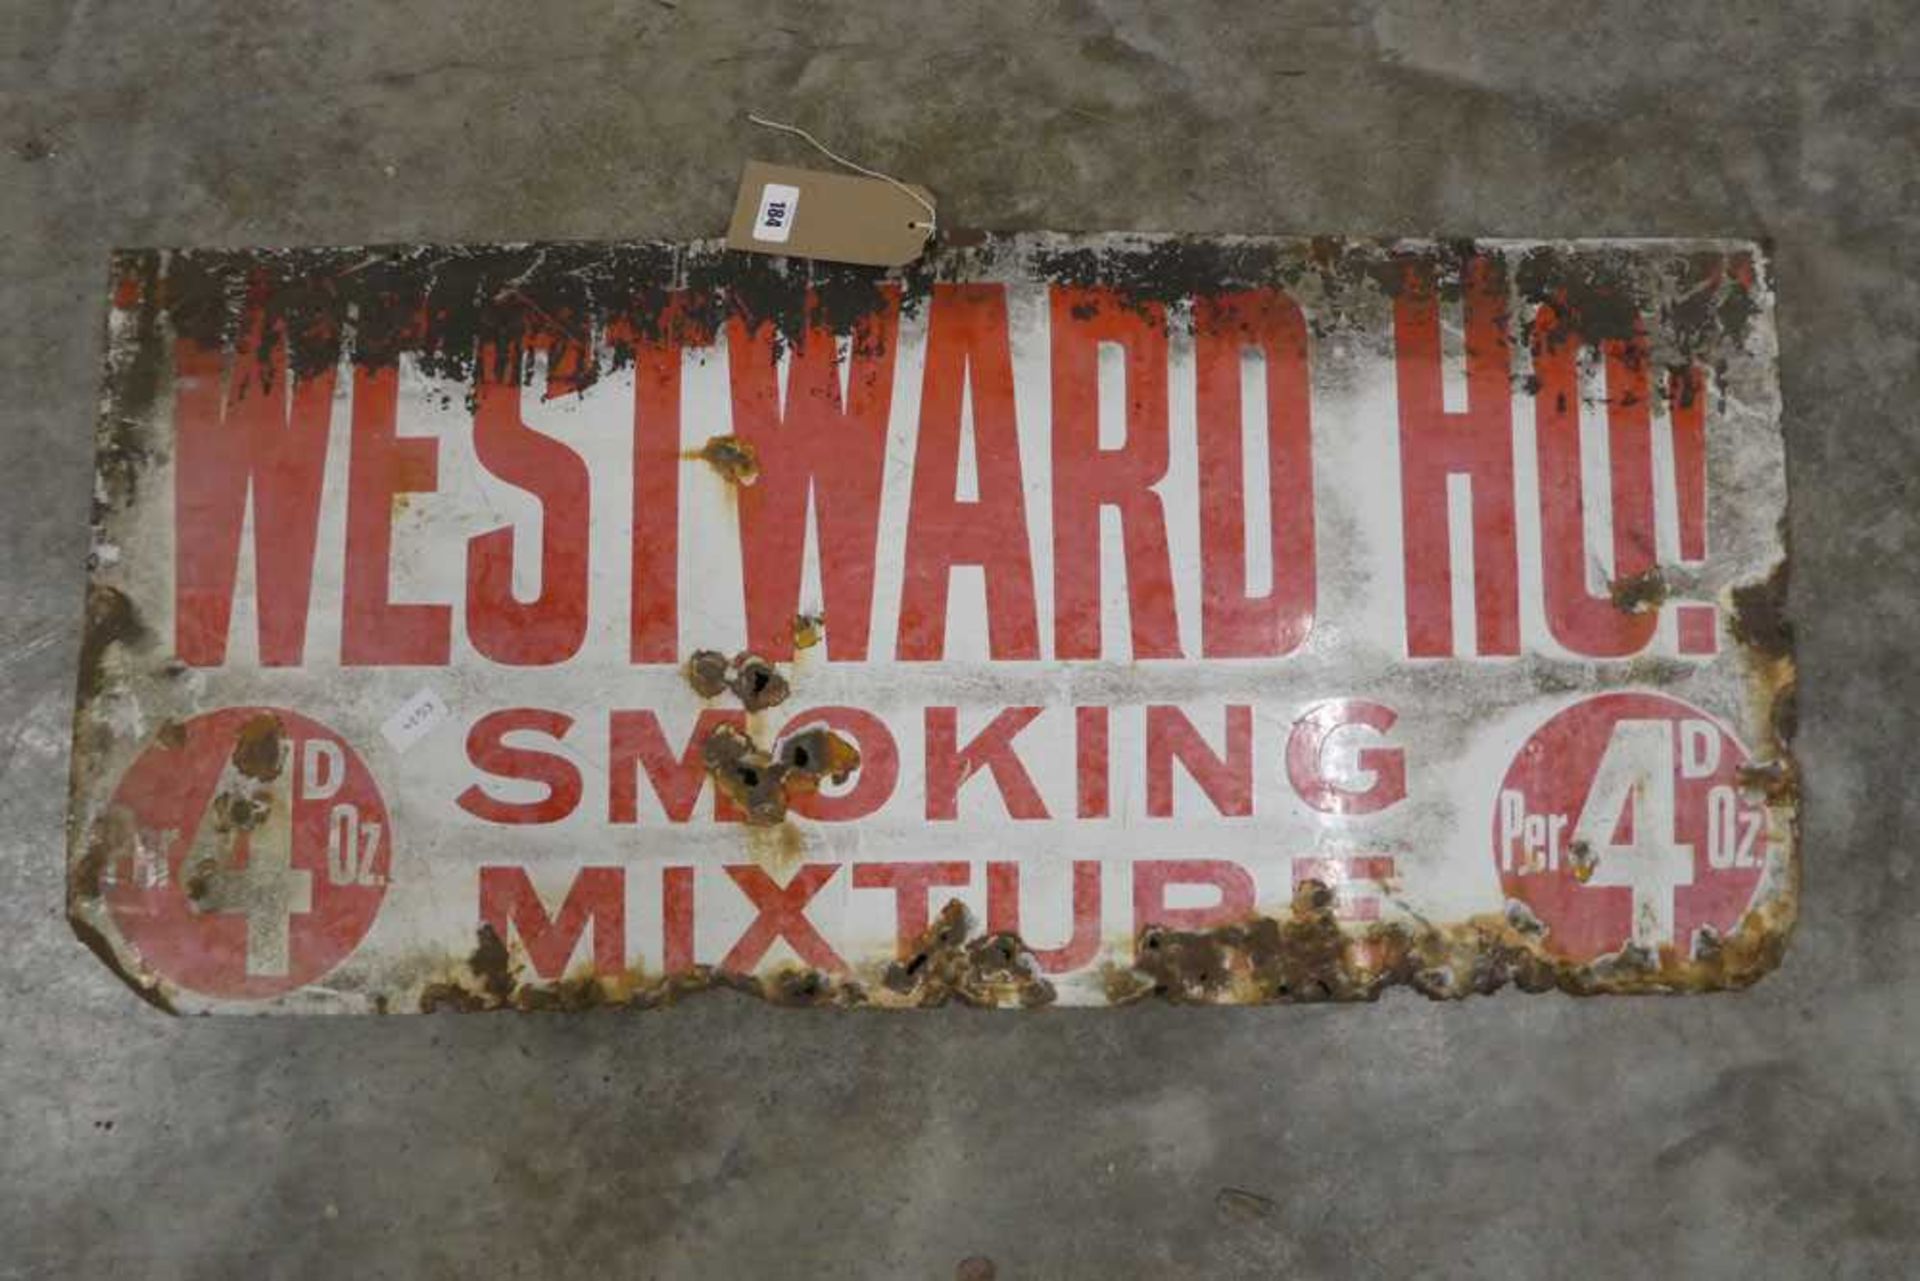 Enamelled metal advertising sign; 'Westward Ho! Smoking Mixture'